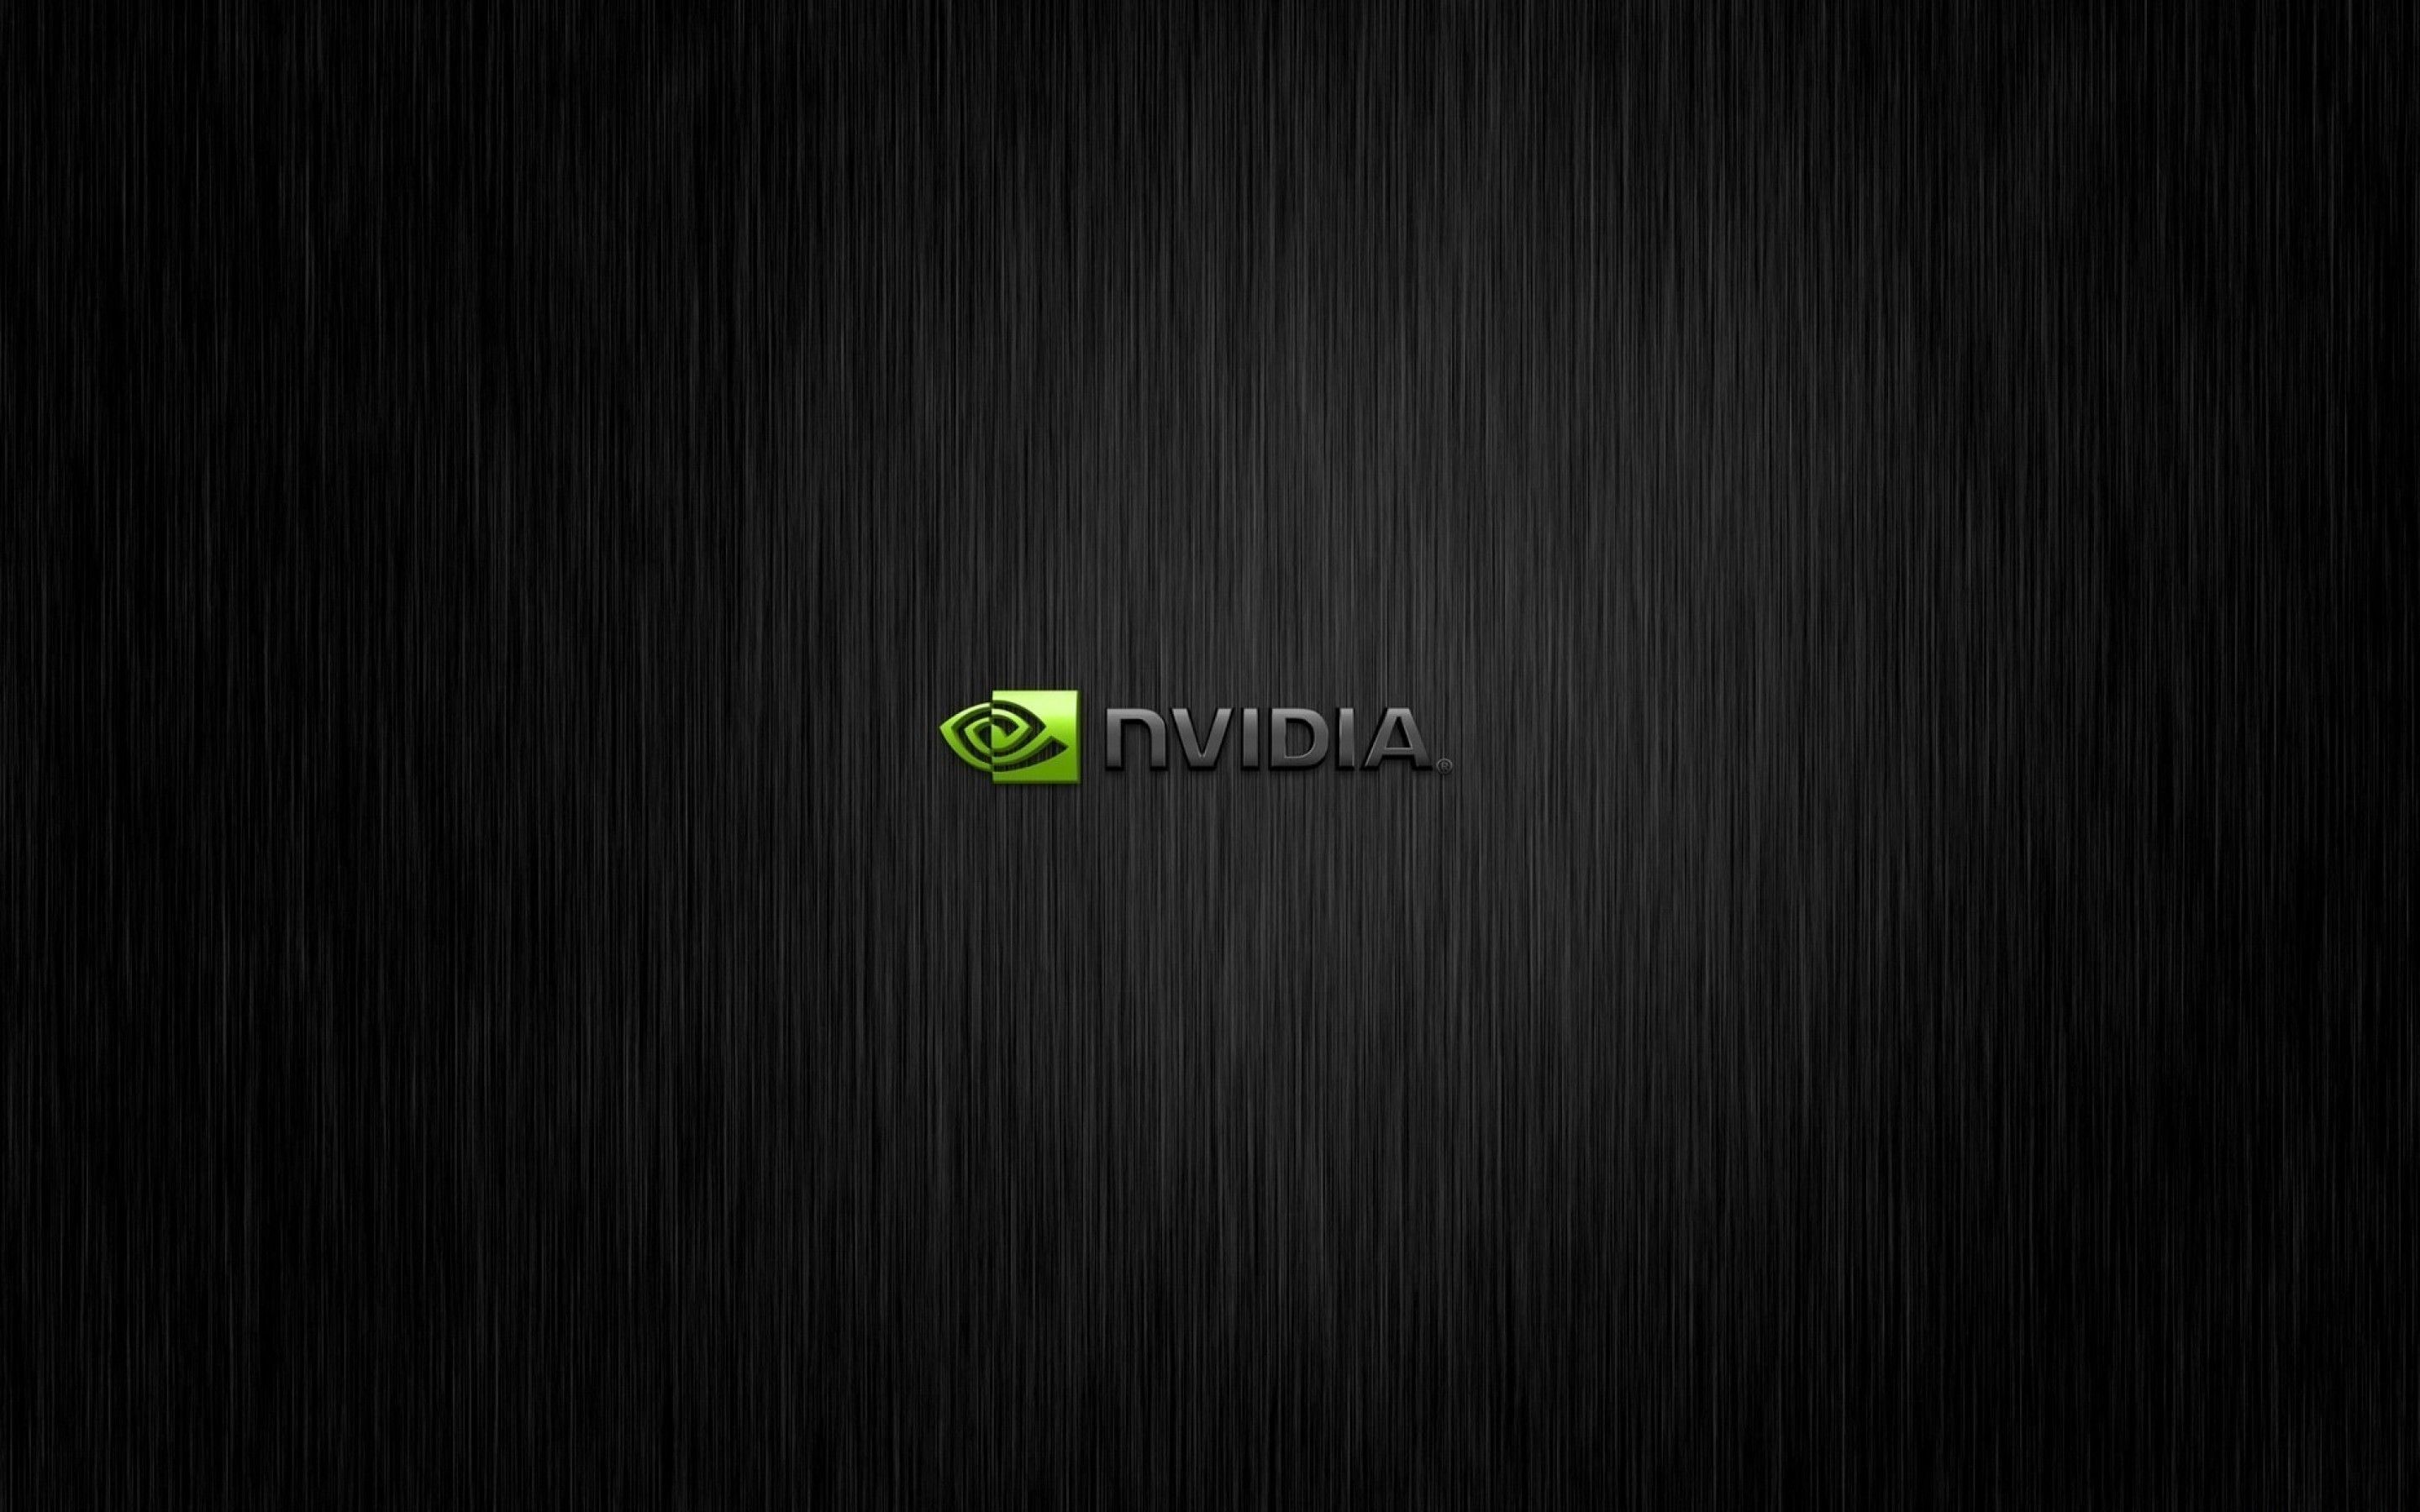 nvidia 4K of Wallpaper for Andriod